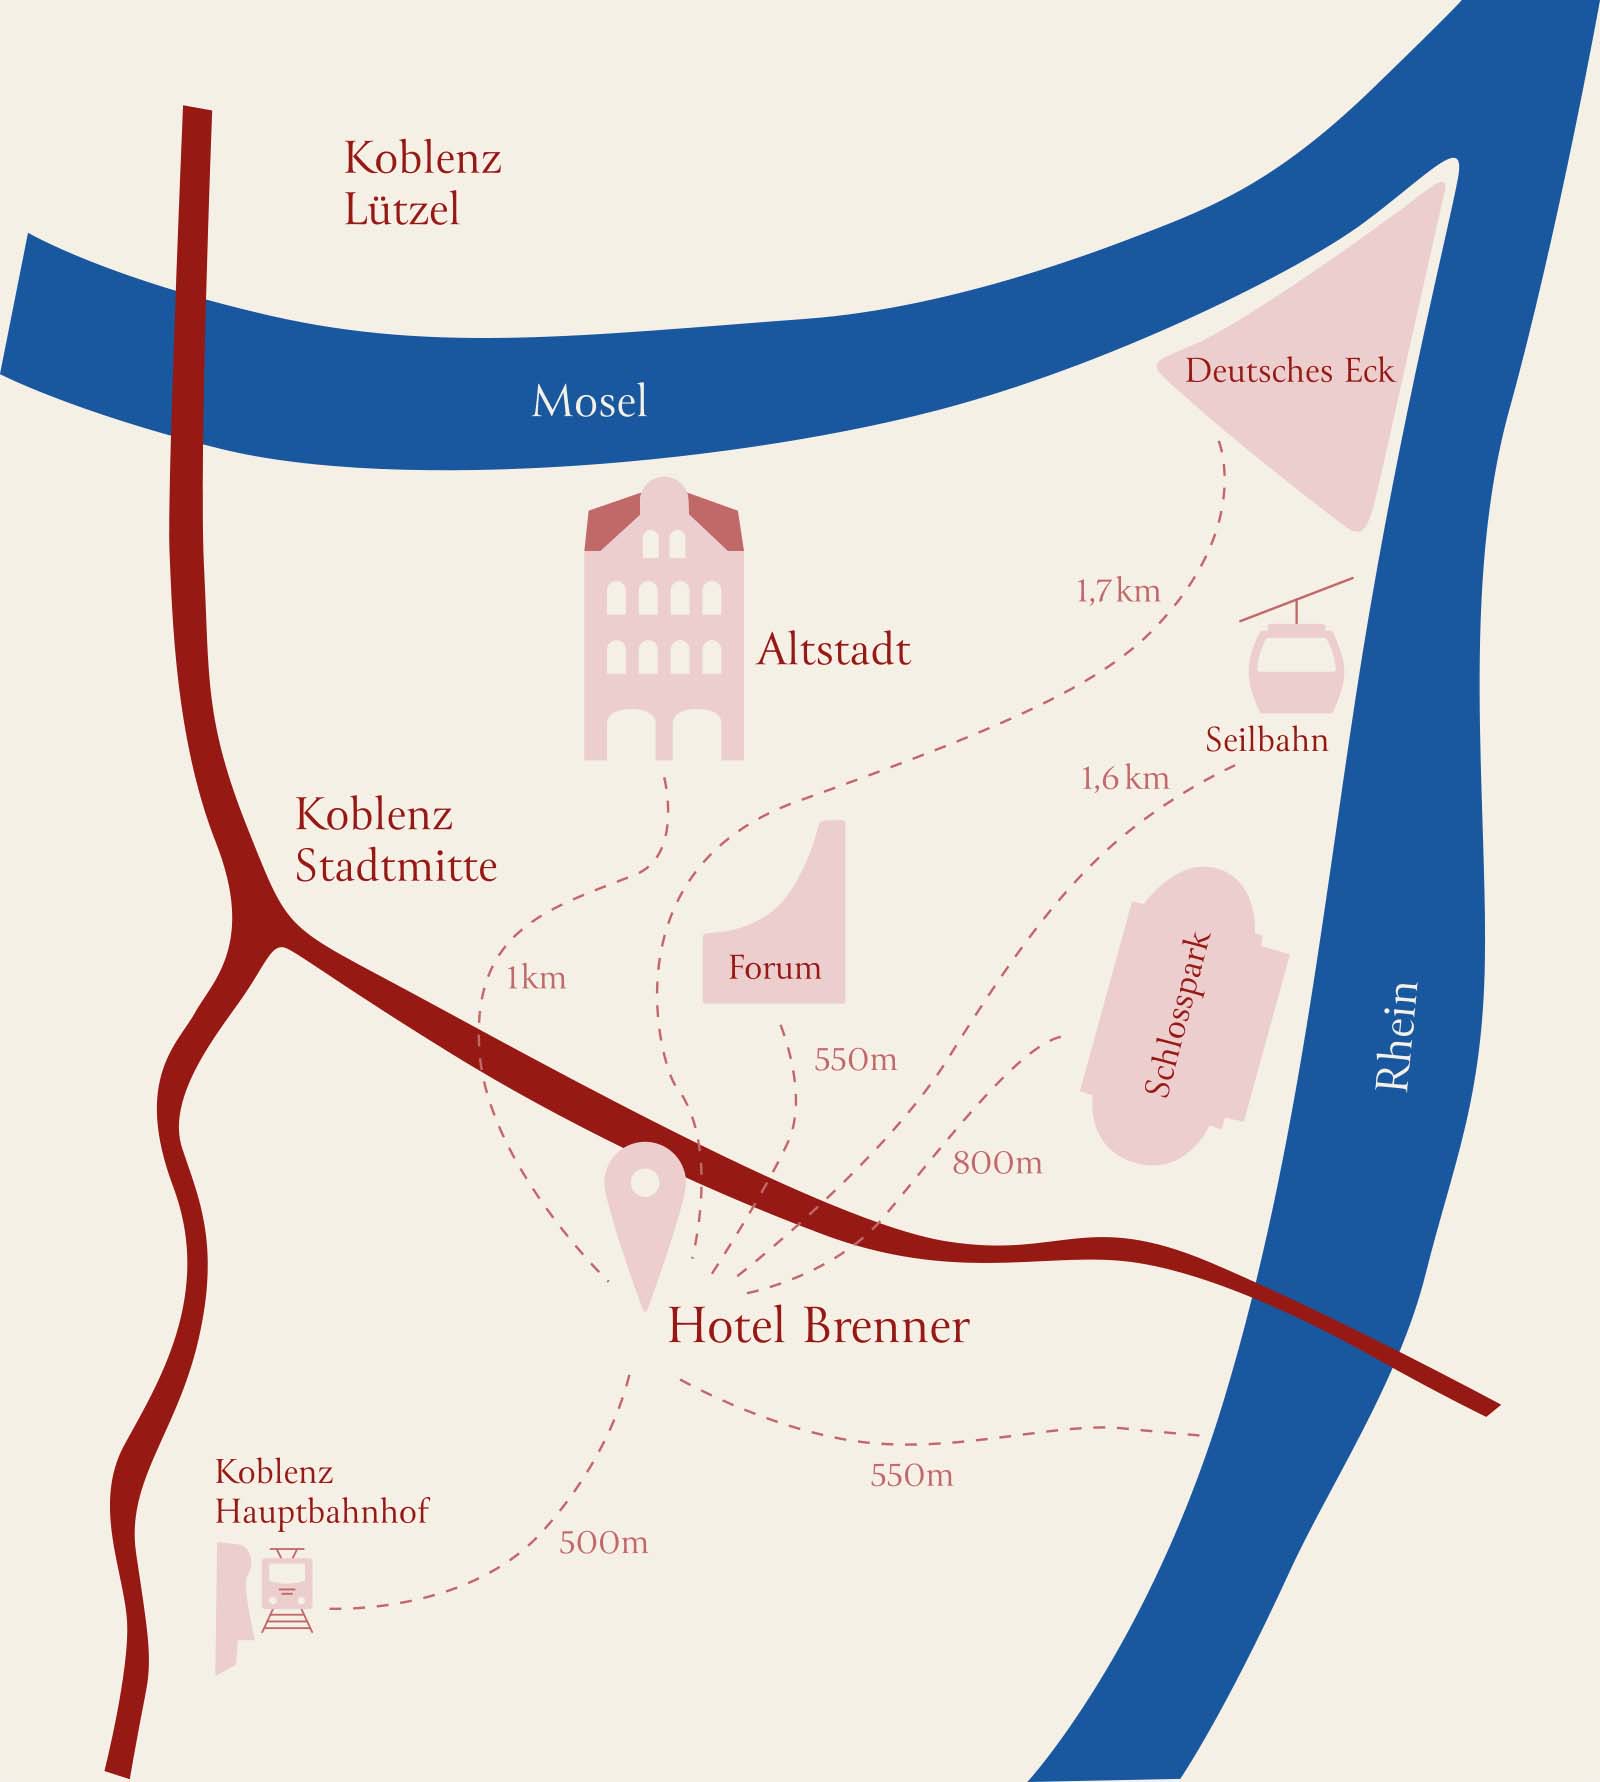 Die Karte verdeutlicht die beste Lage des Hotel Koblenz in der Stadtmitte